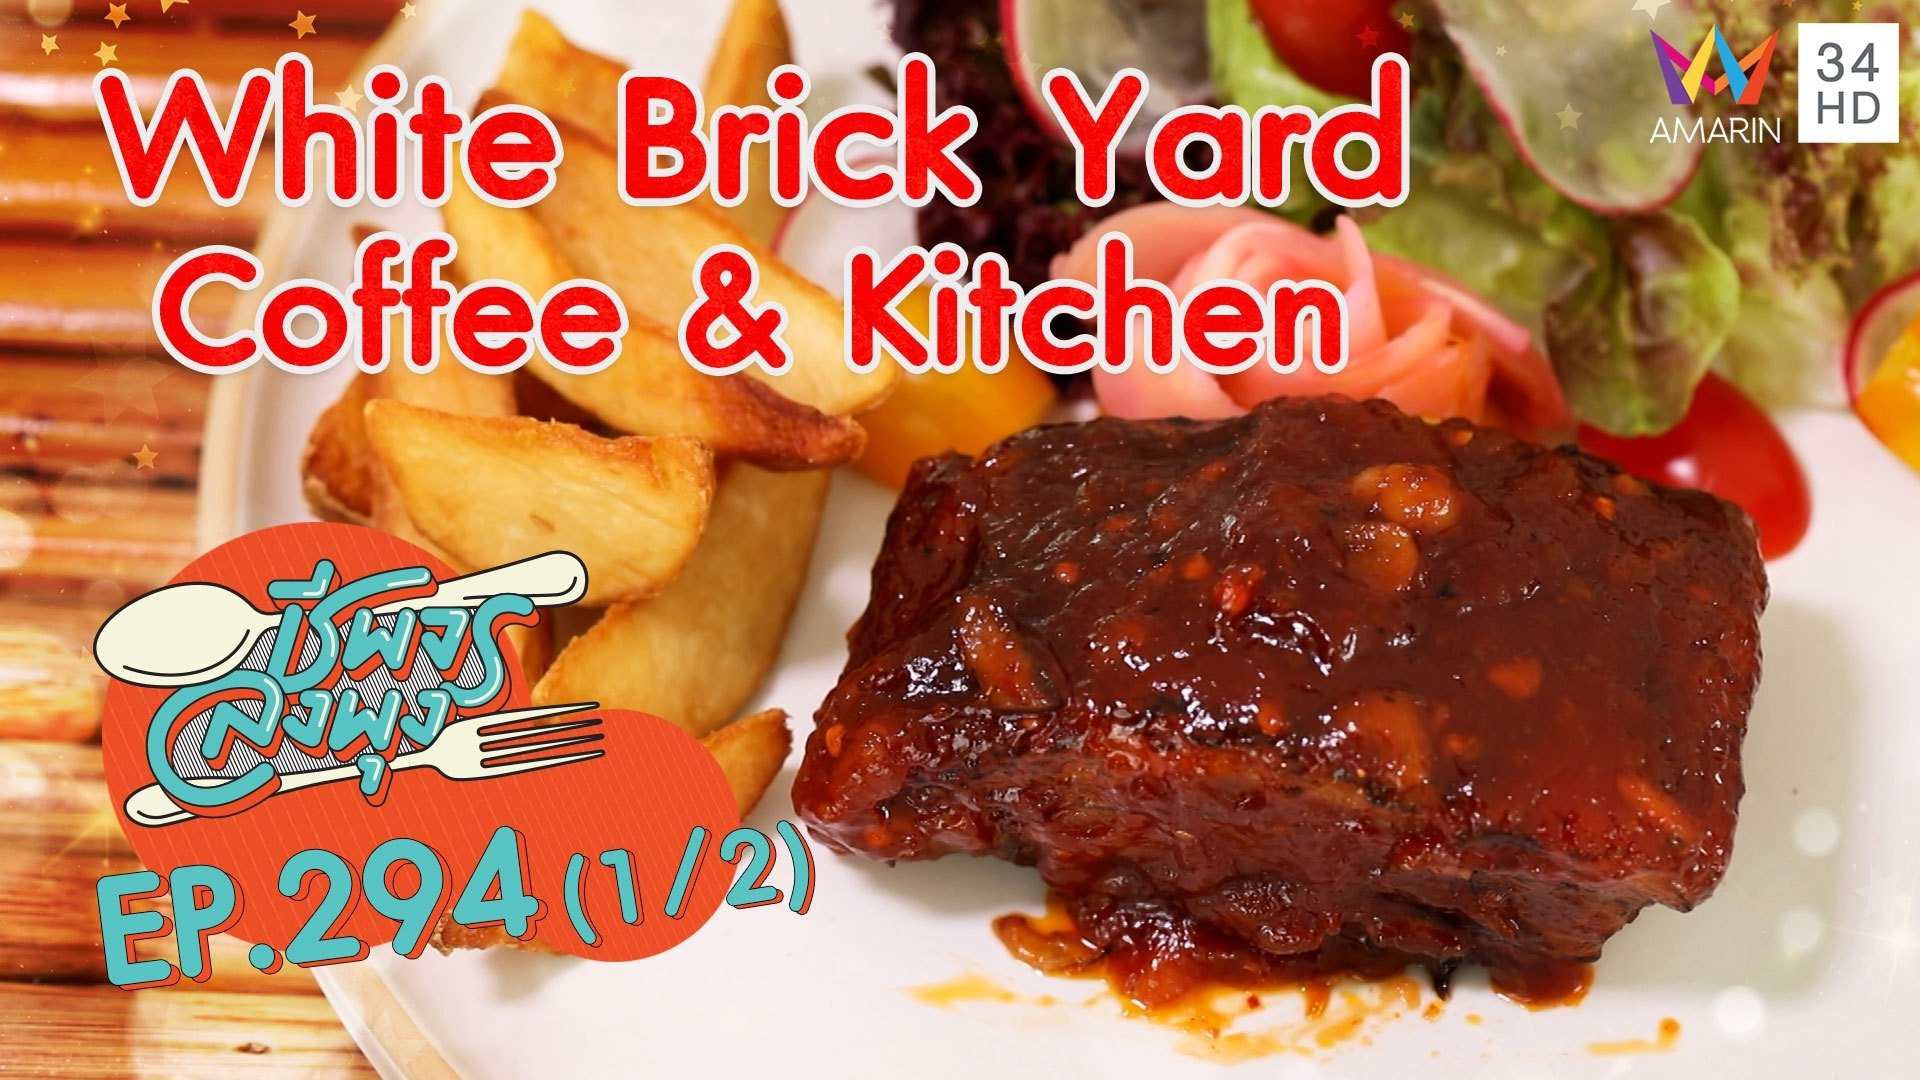 ร้านคาเฟ่สไตล์มินิมอล @ ร้าน White Brick Yard - Coffee & Kitchen | ชีพจรลงพุง | 17 เม.ย. 64 (1/2) | AMARIN TVHD34